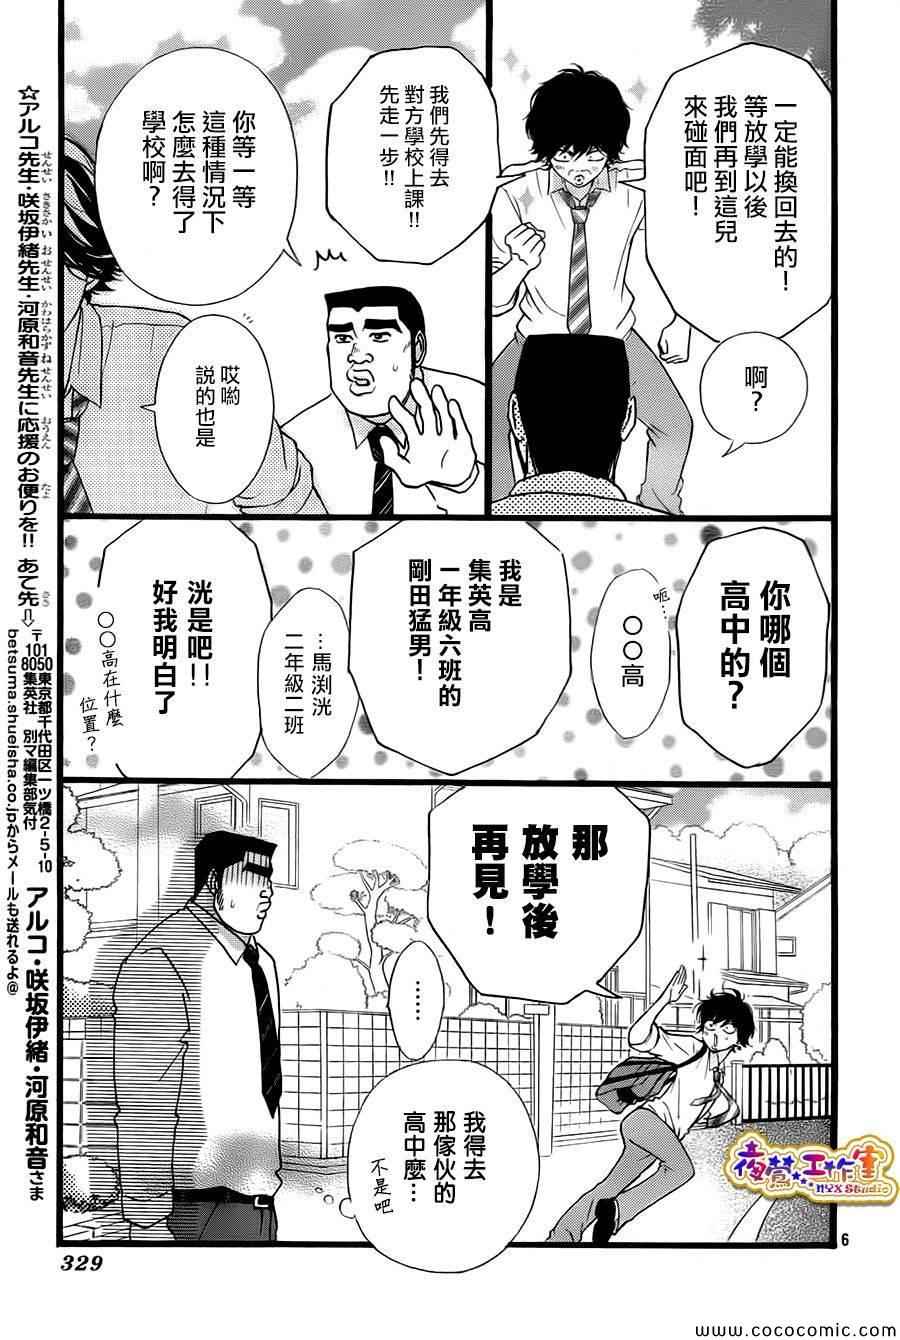 俺物語漫畫俺之旅 第6頁 俺物語俺之旅劇情 看漫畫